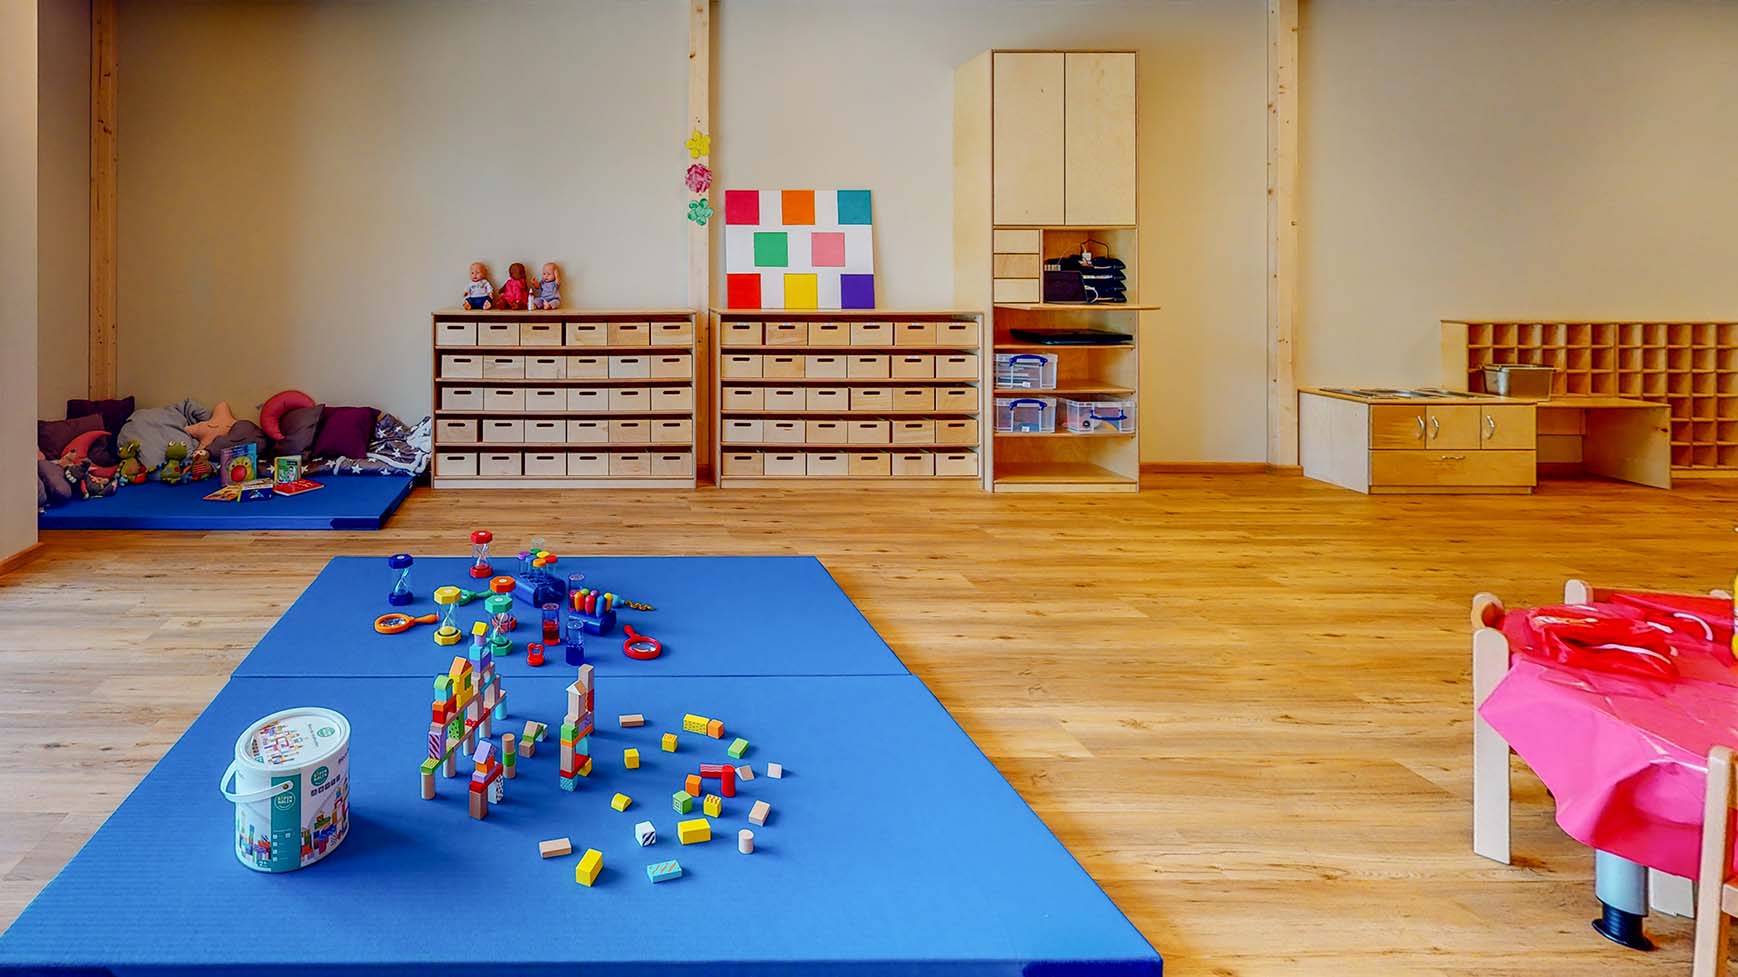 On regarde de face dans une pièce. Il y a deux matelas bleus au premier plan sur lesquels sont répartis des jouets. Grâce aux espaces de jeu communs, nos crèches favorisent les aptitudes sociales des enfants.